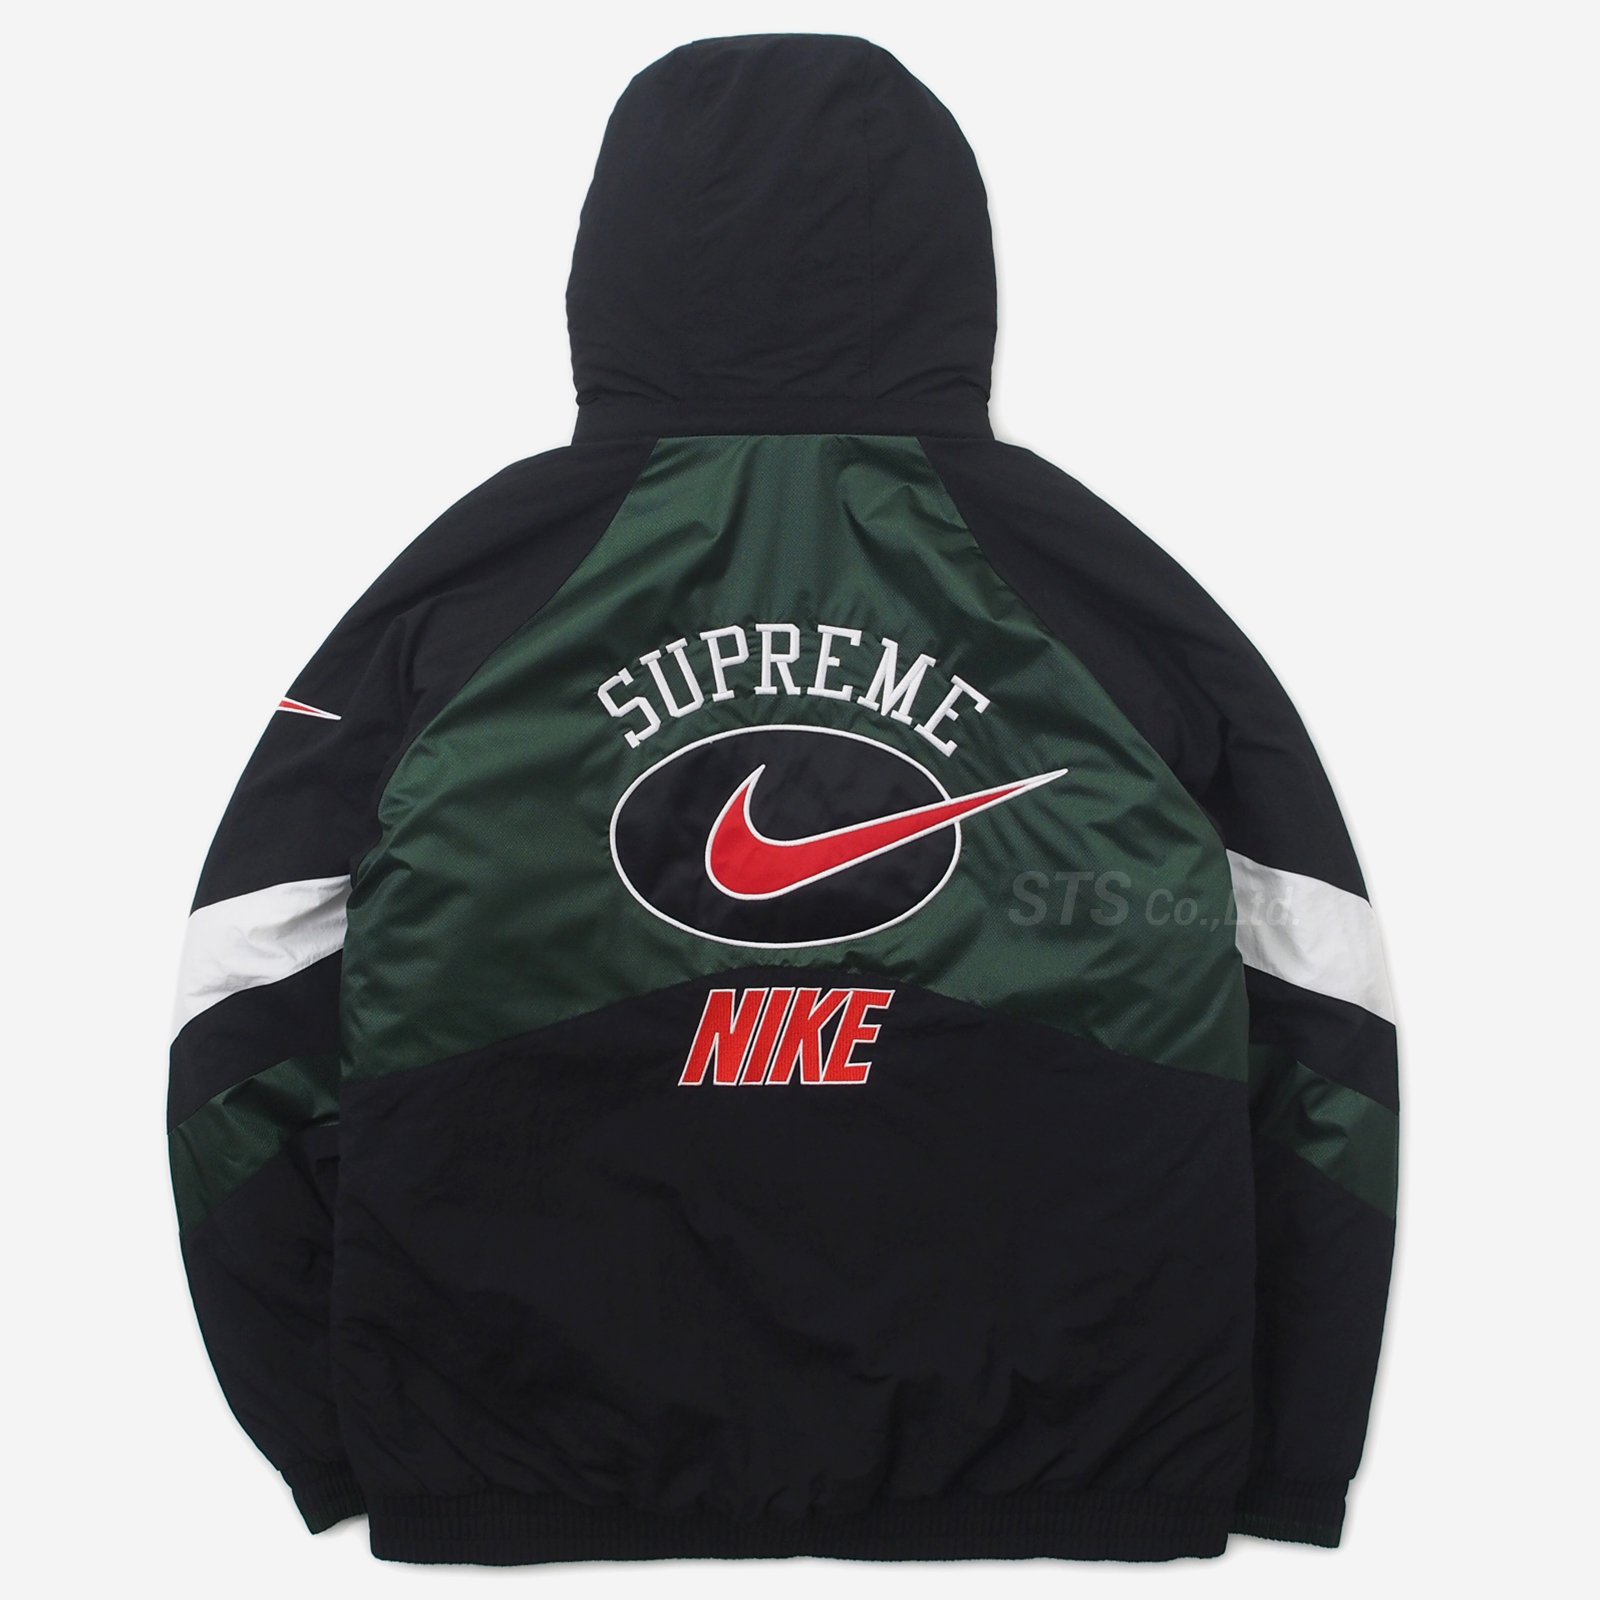 Supreme/Nike Hooded Sport Jacket - ParkSIDER